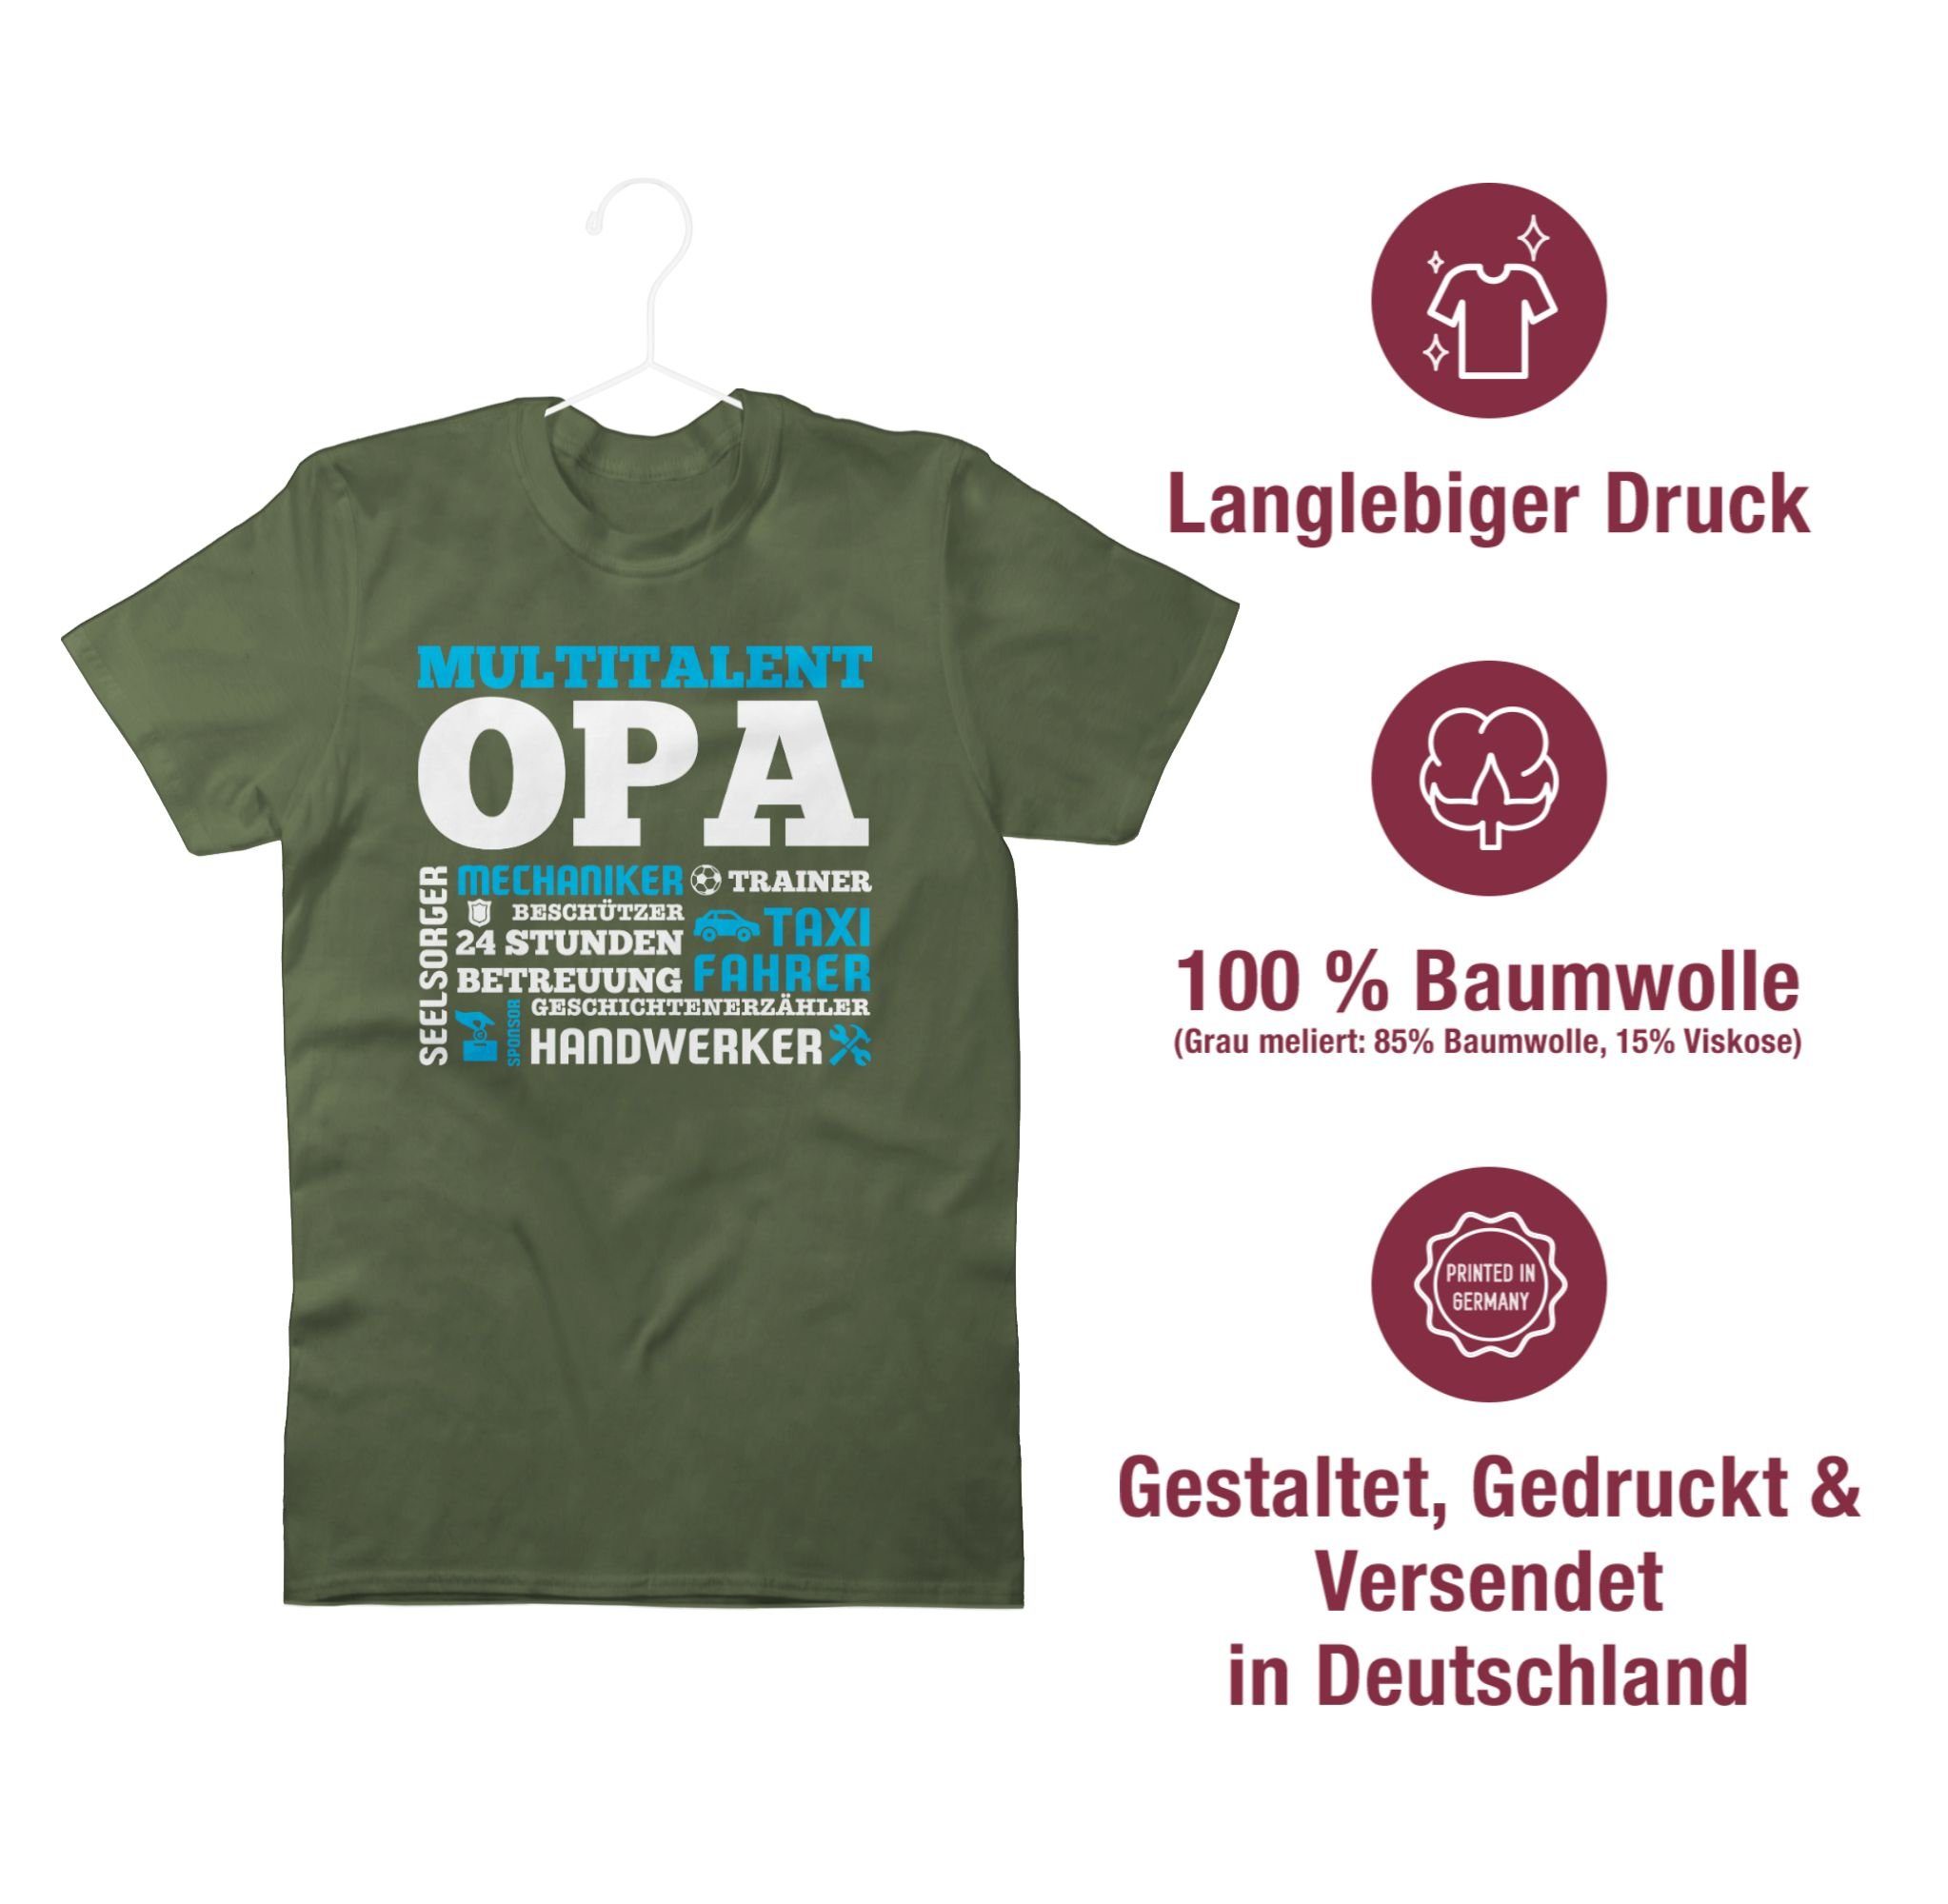 Army Multitalent Grün Opa Shirtracer Geschenke Opa T-Shirt 3